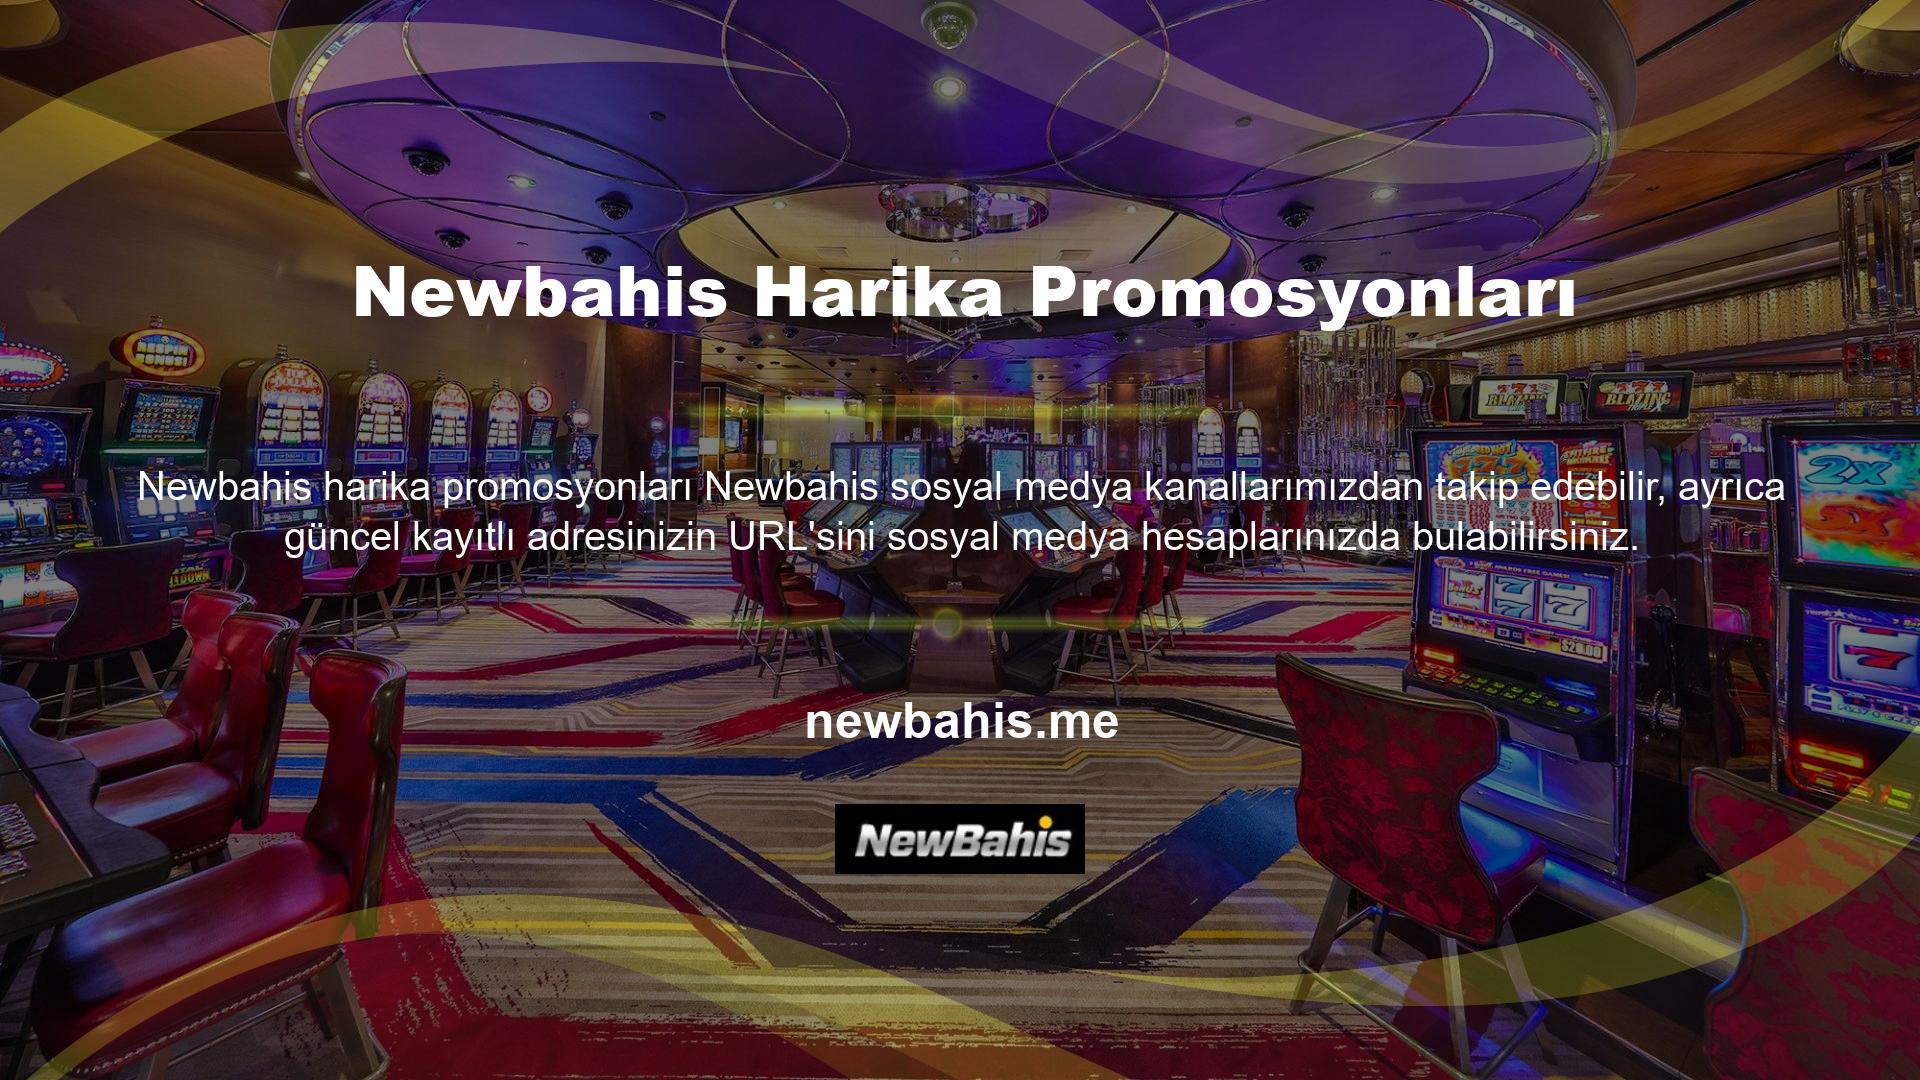 Casino tutkunlarının ve casino tutkunlarının bildiği gibi, casino siteleri Türkiye'de yasa dışı bir statüye sahiptir ve bu nedenle BTK (Bilgi Teknolojileri ve İletişim Kurumu) casino sitelerine erişime cezalar uygulamaktadır